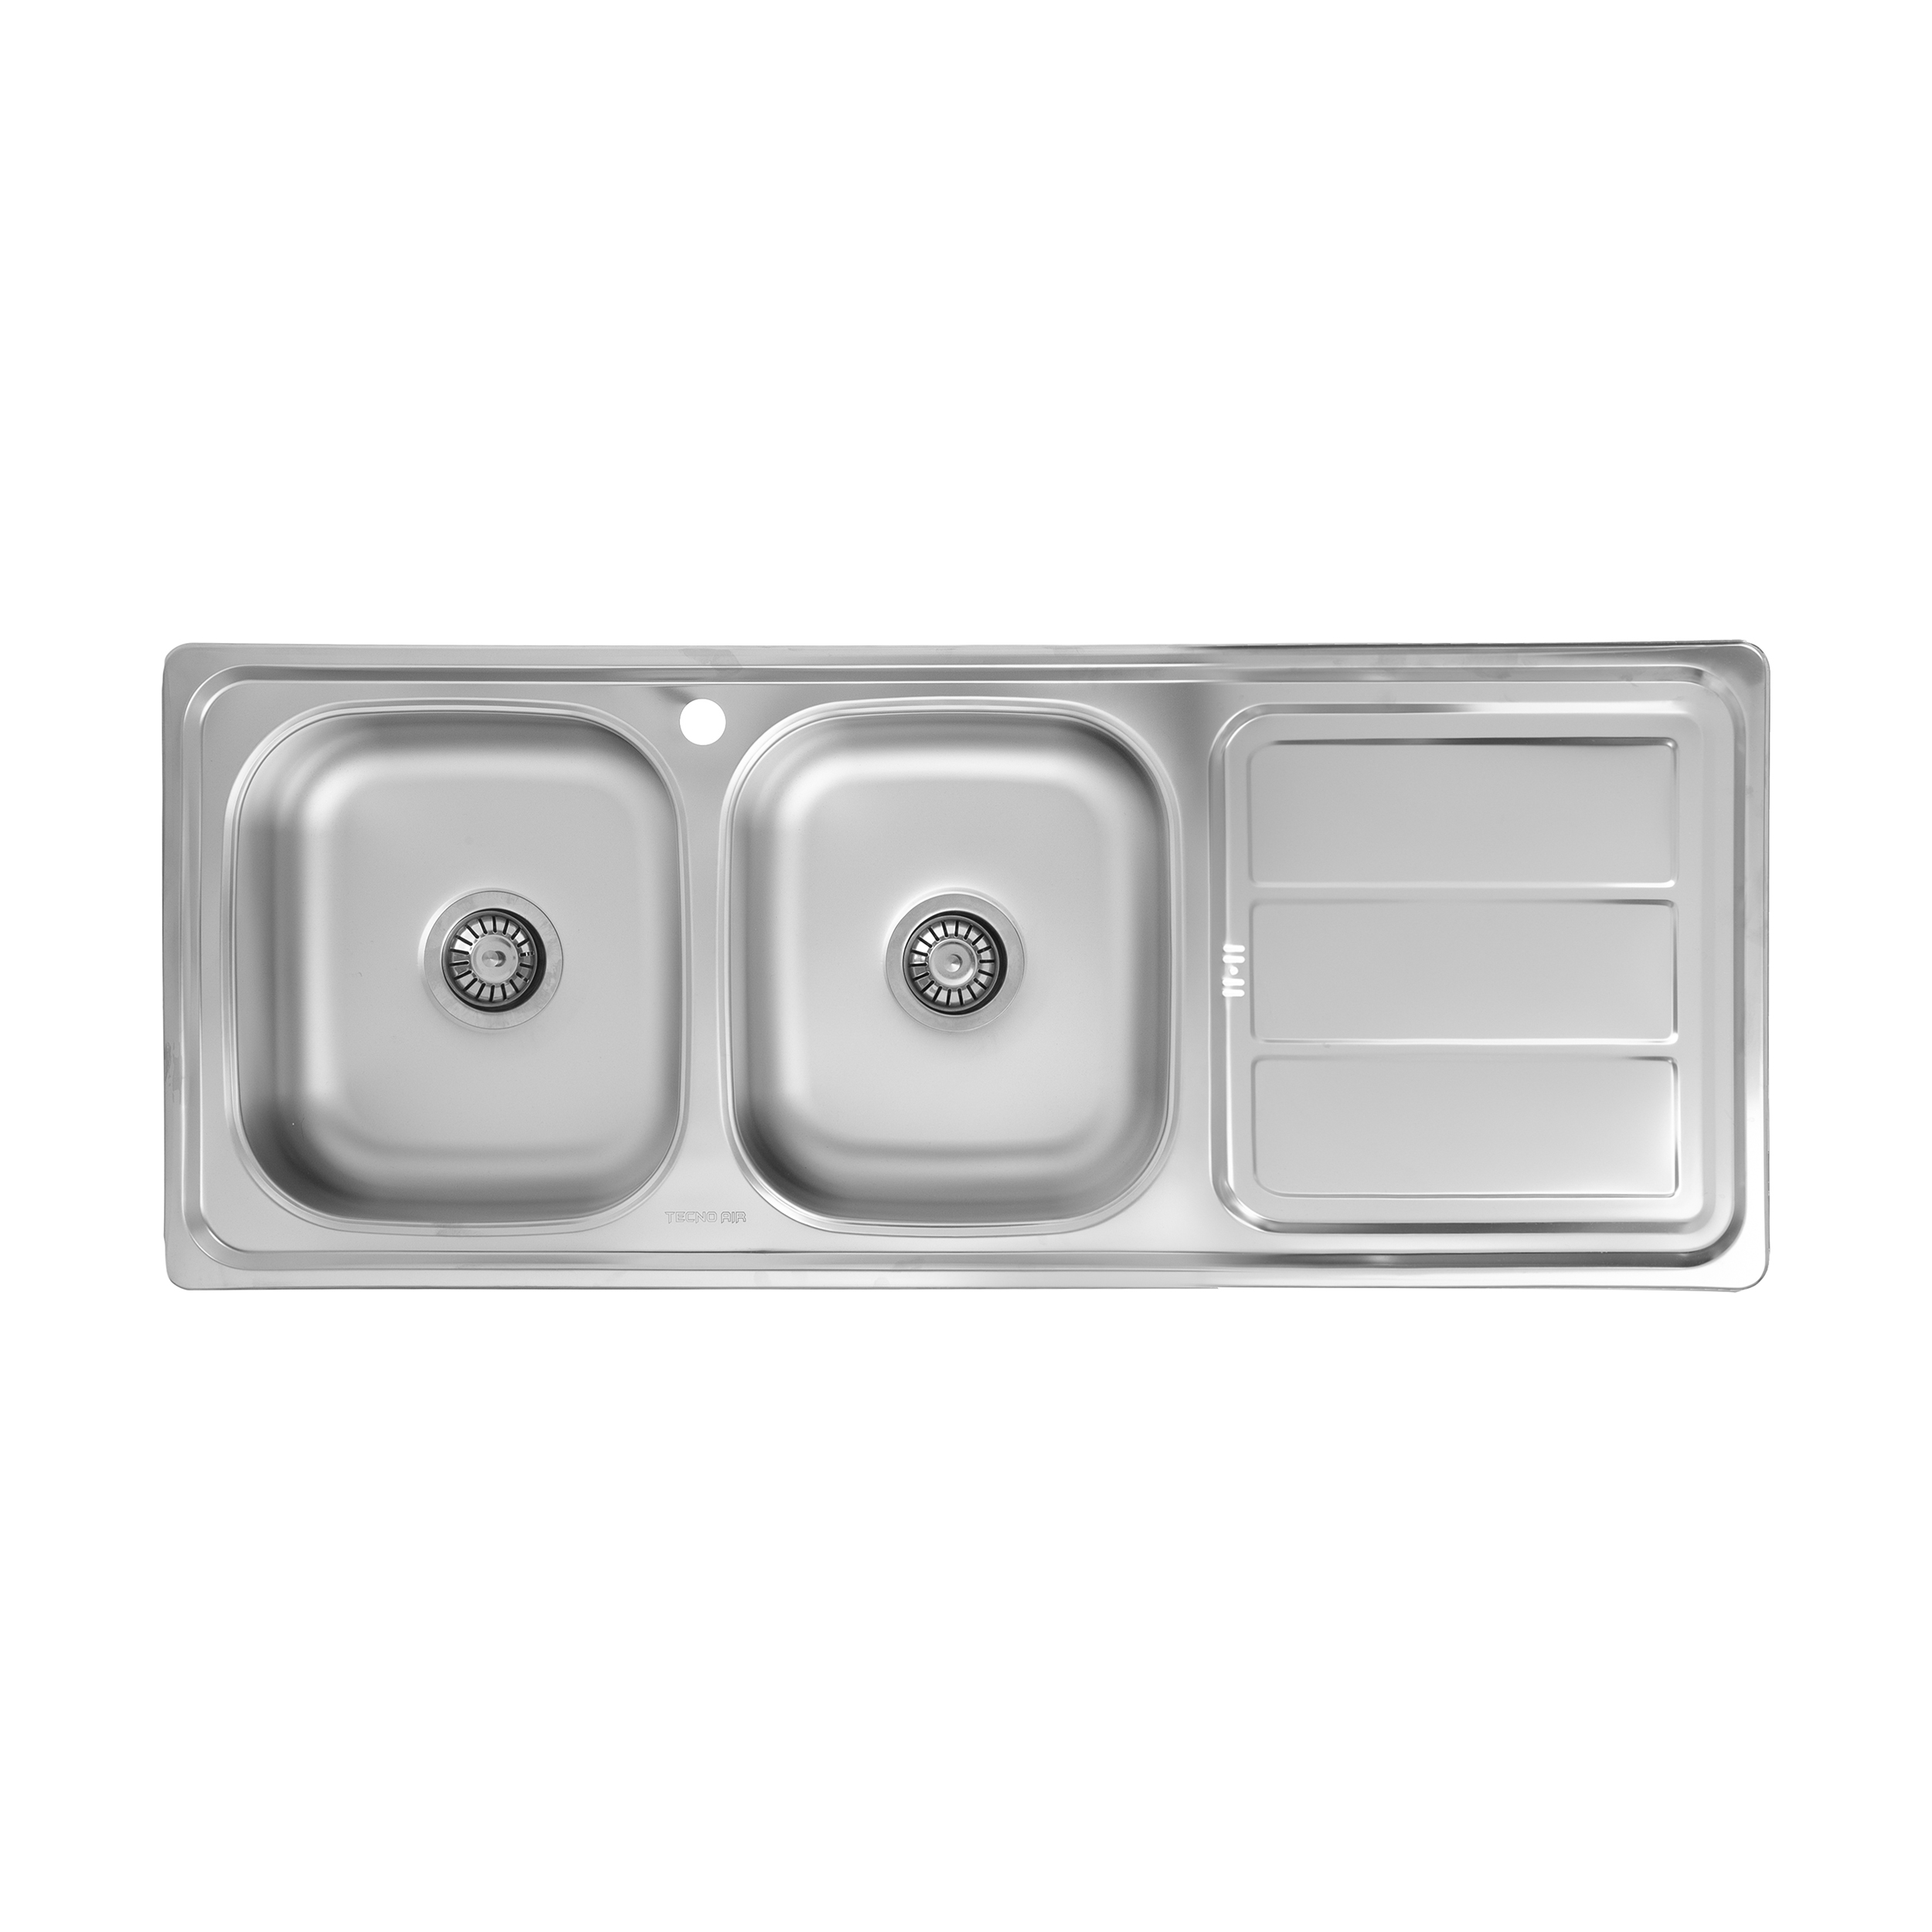 سینک ظرفشویی تکنو ایر مدل M01 توکار